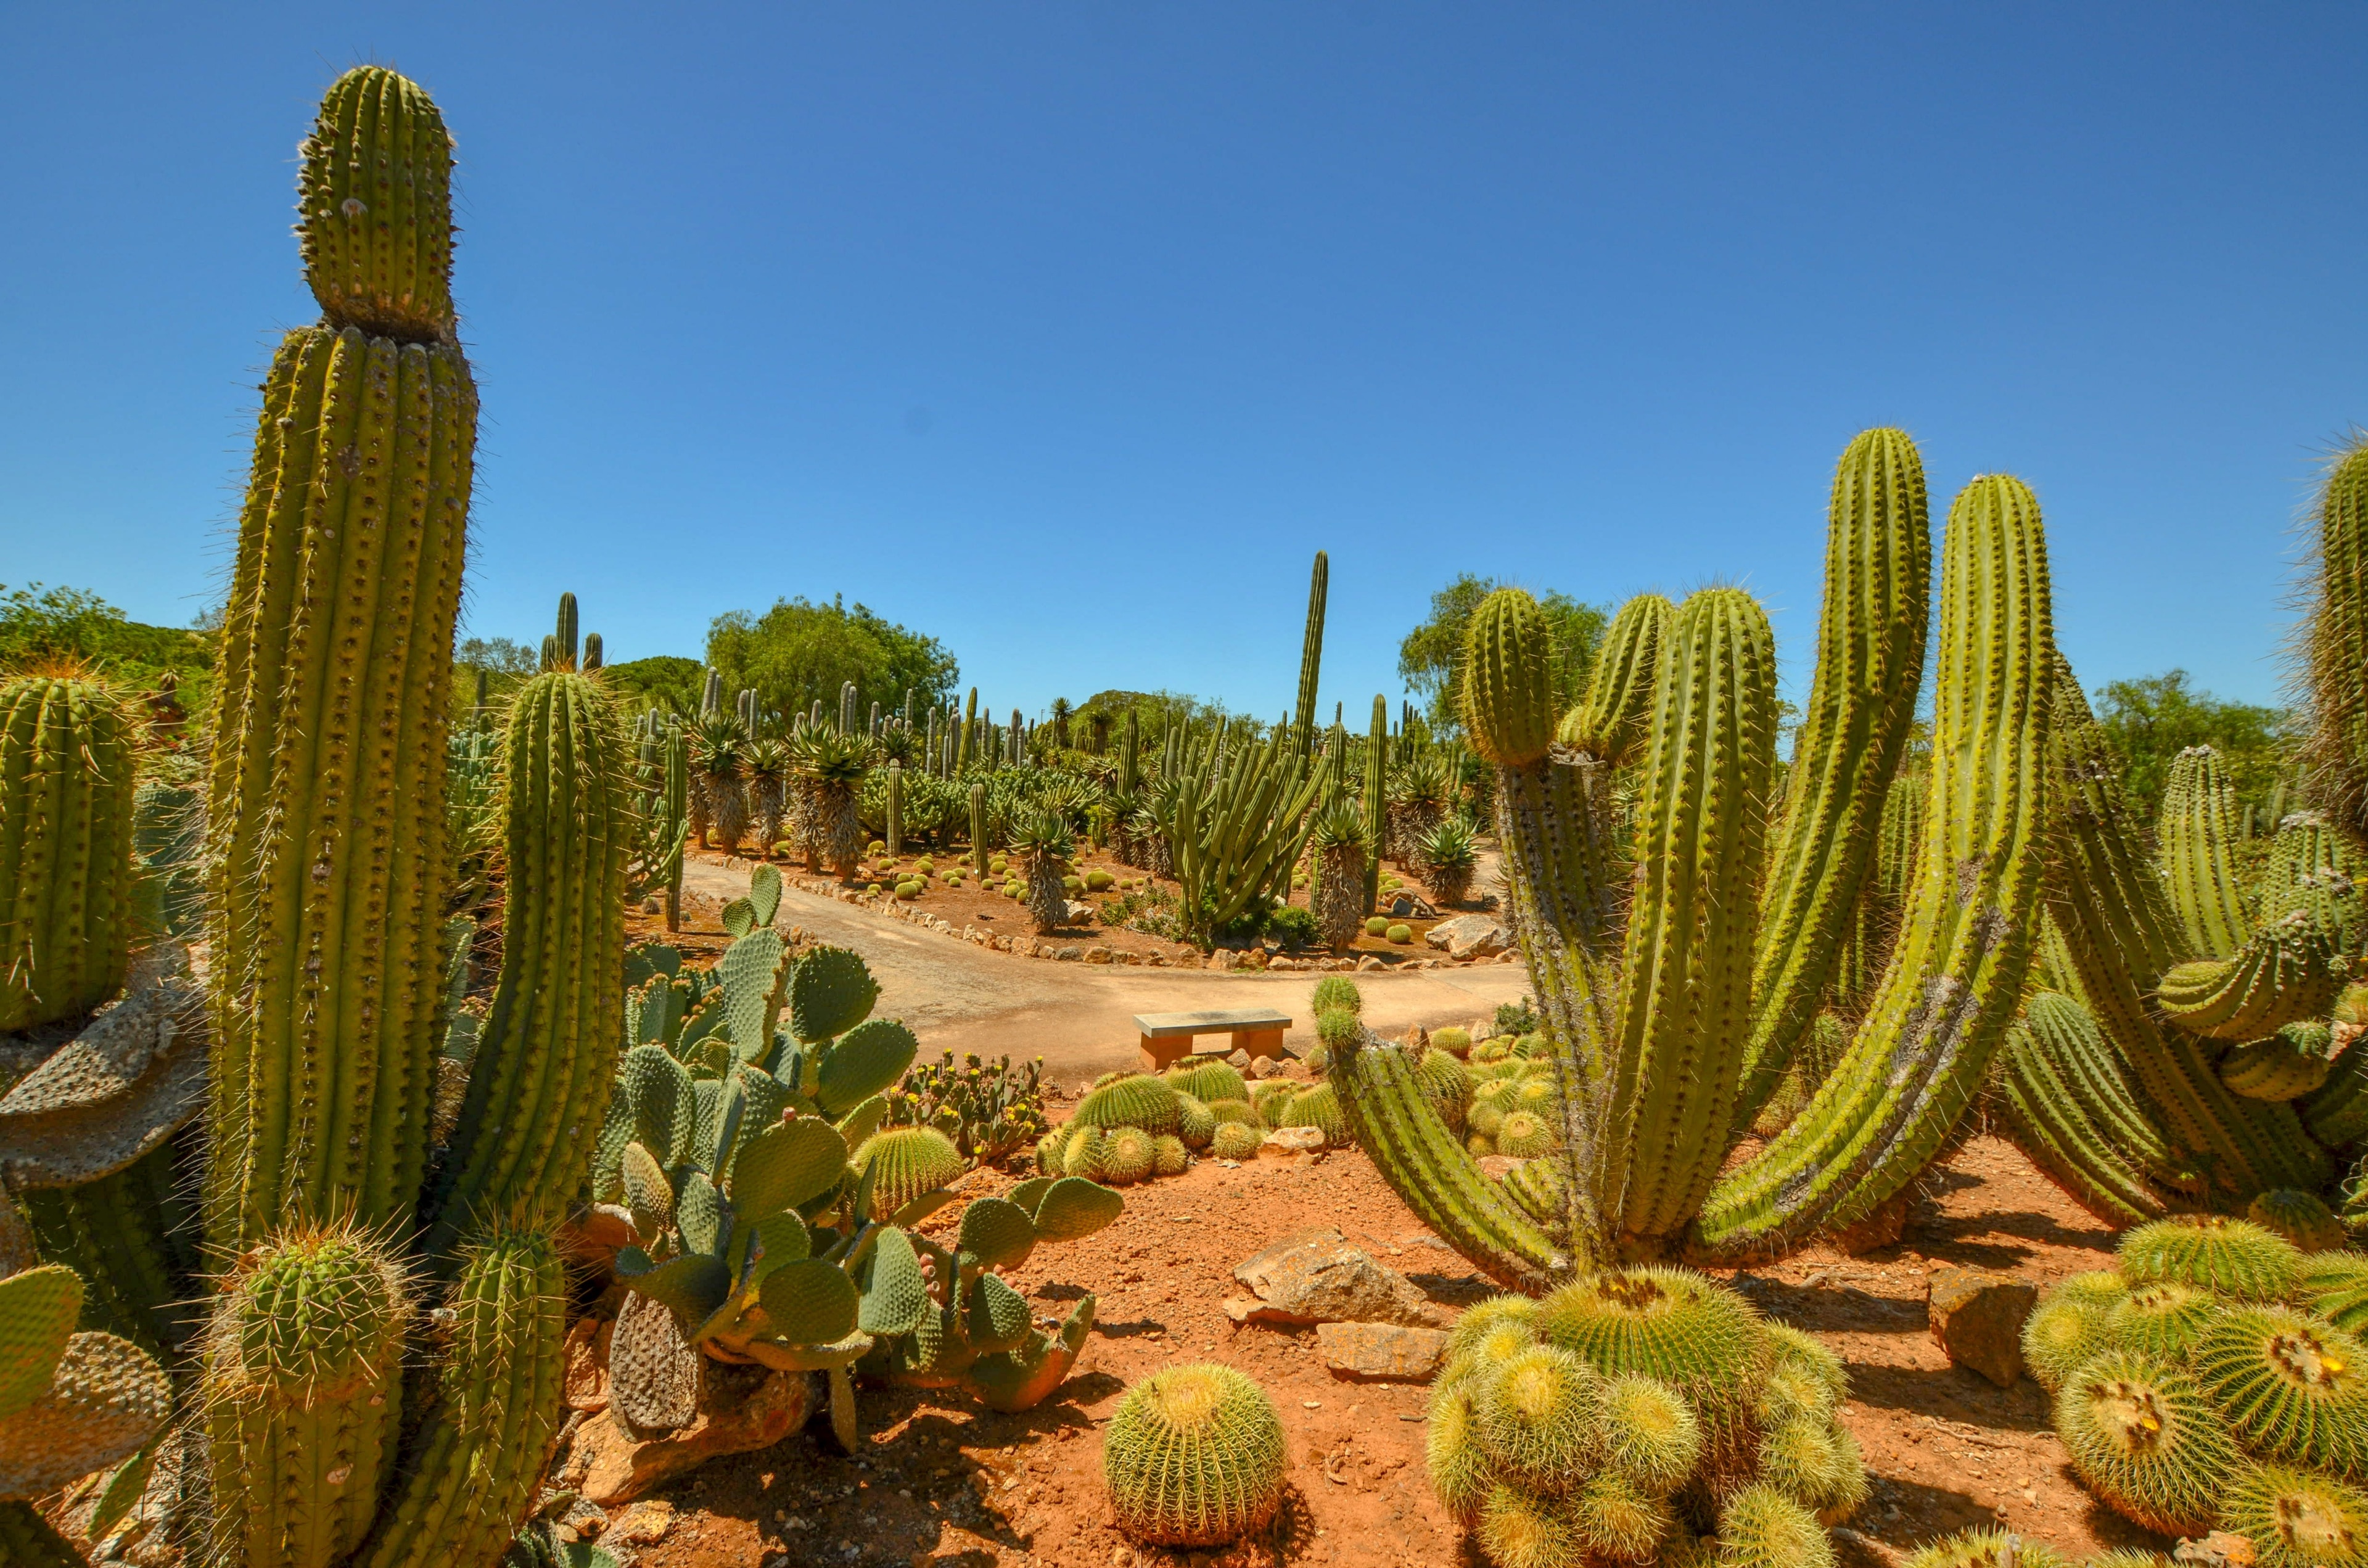 Surreal cactus landscape in Mallorca.